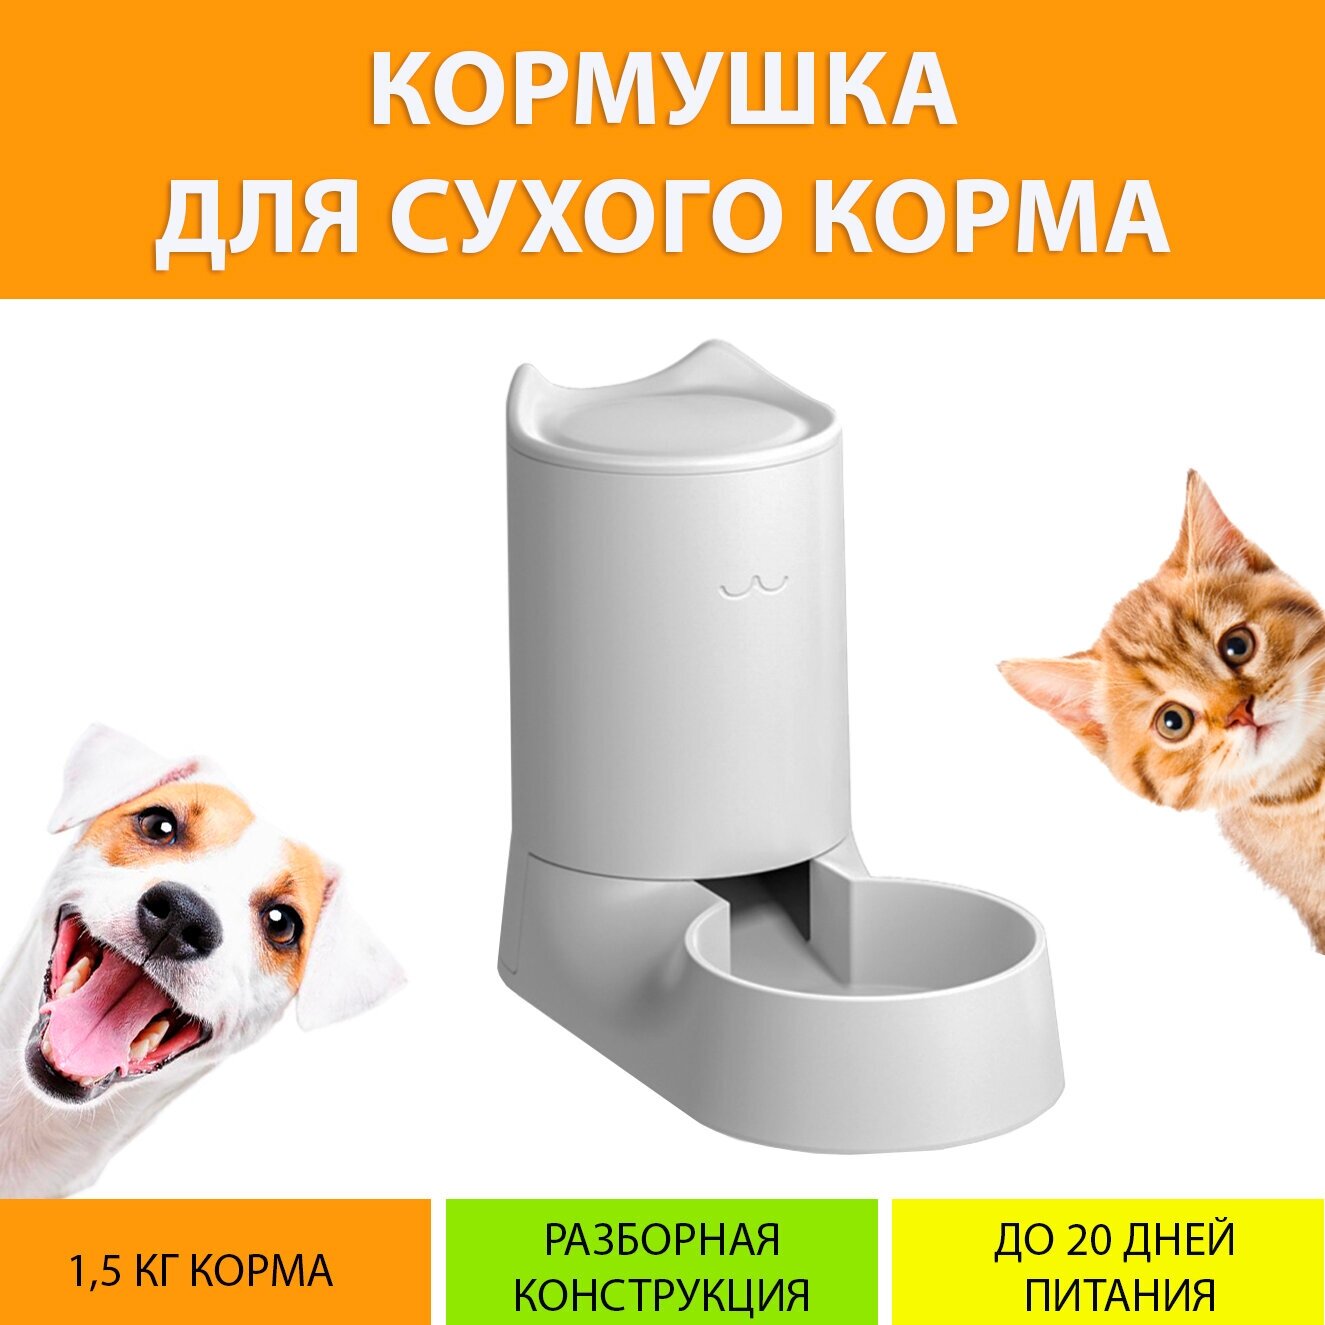 Кормушка для кошек и собак с контейнером на 1,5 кг сухого корма, принудительная подача корма, MY PETS GADGETS - фотография № 1